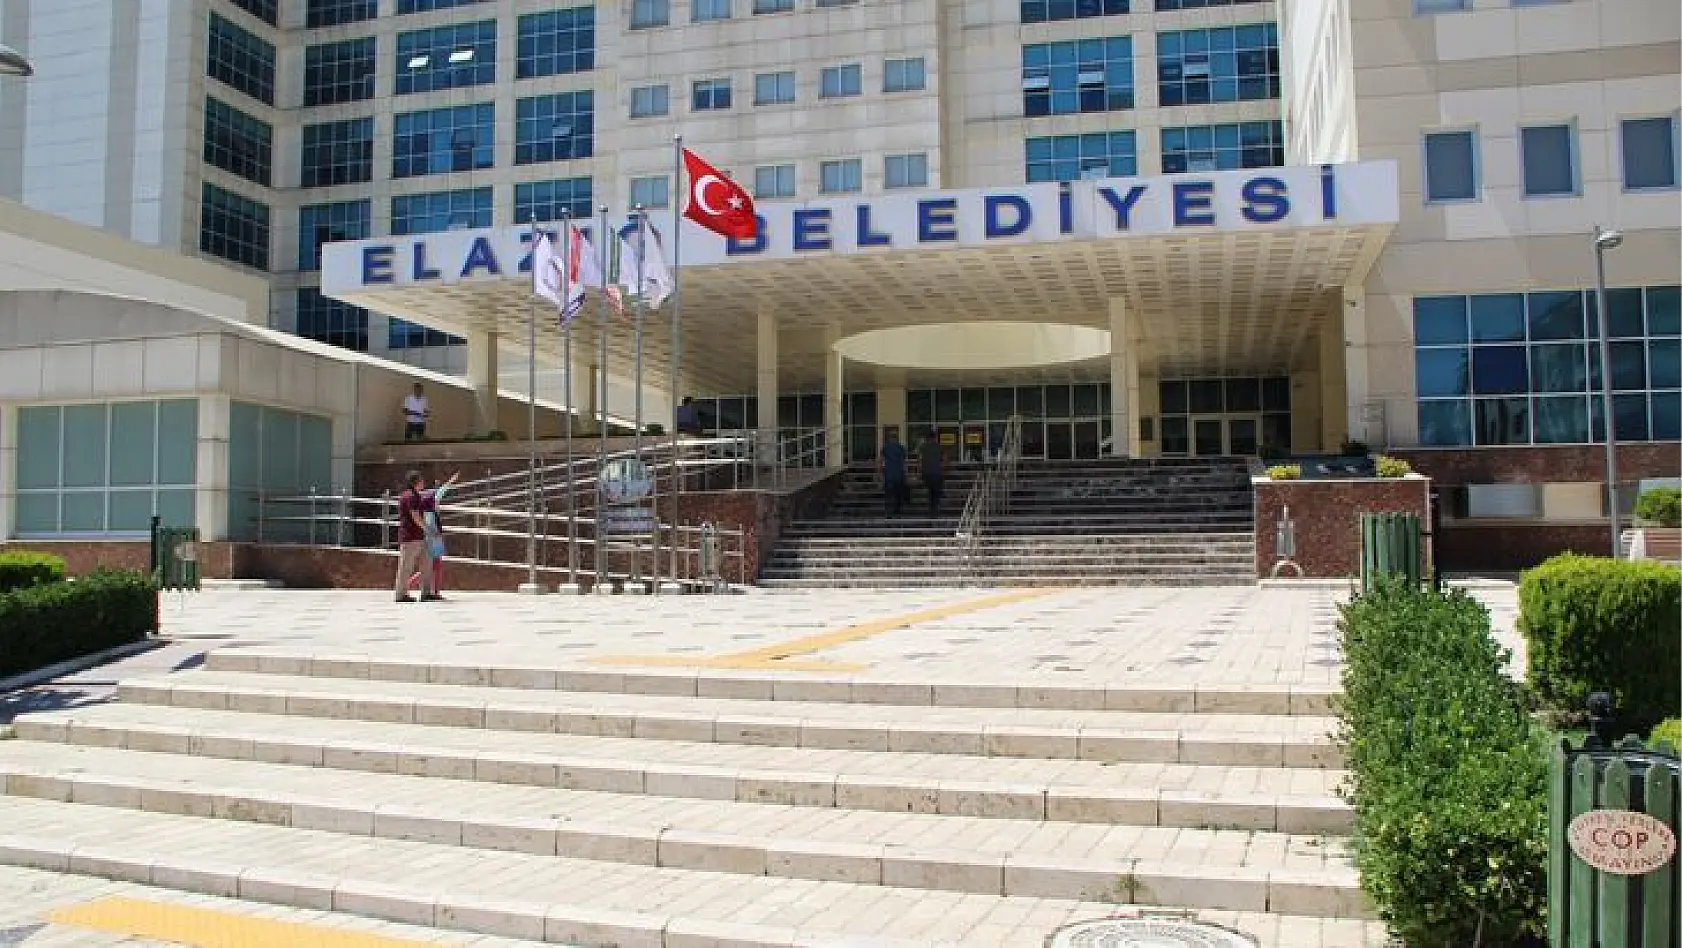 Elazığ Belediyesi Çevre Haftası Etkinlikleri Başlıyor